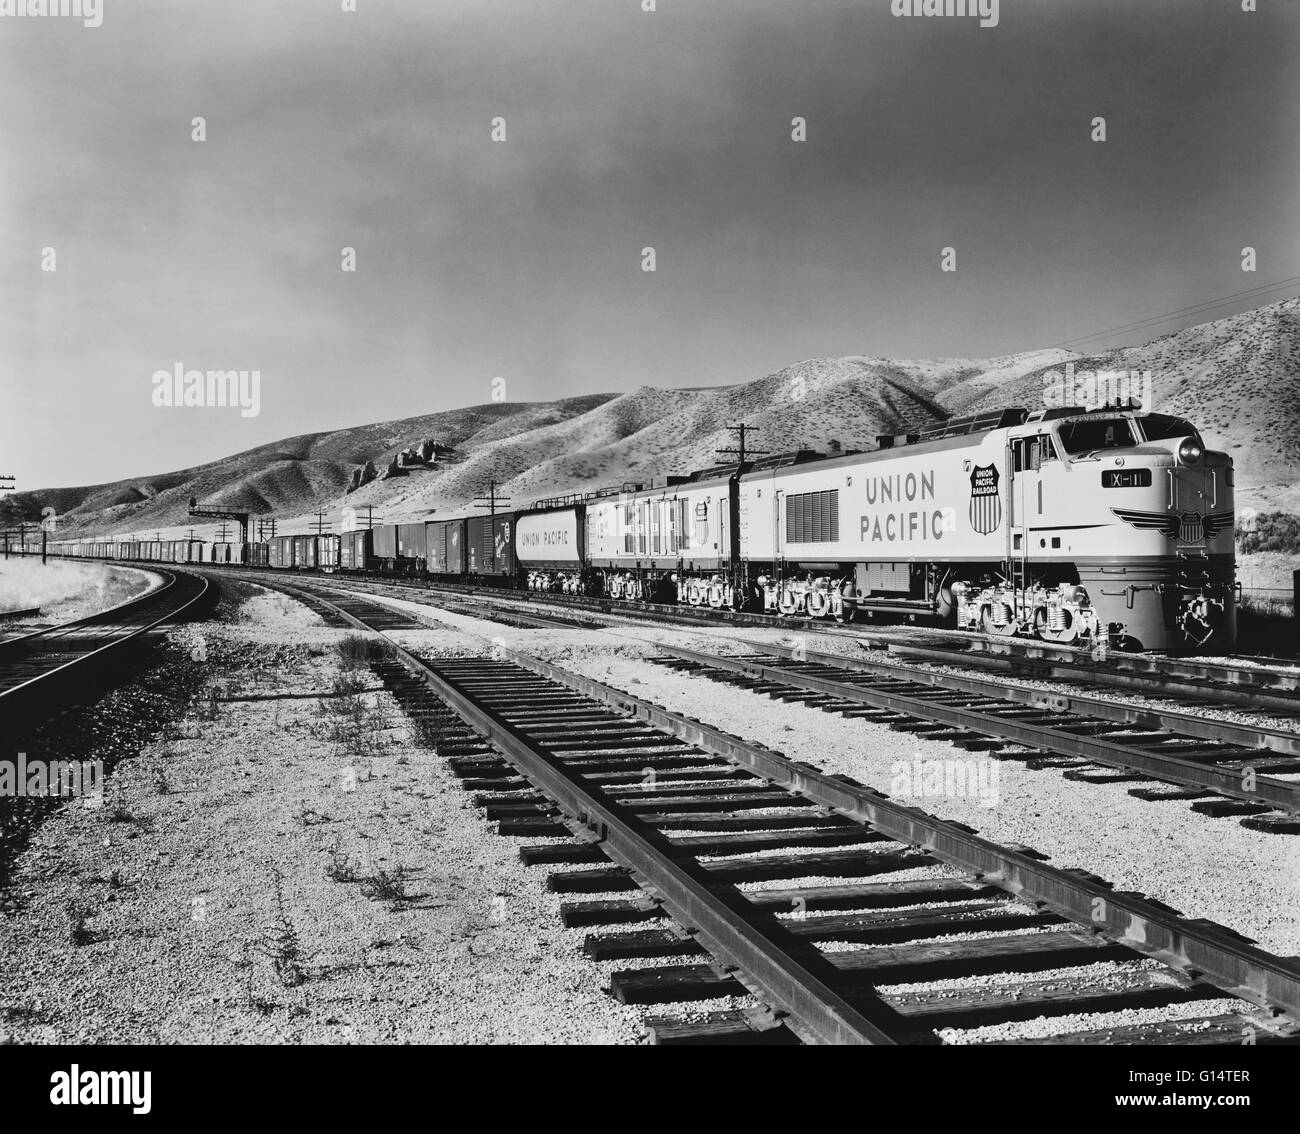 Immagine non datata di una della Union Pacific Railroad turbina a gas treno merci. Foto Stock